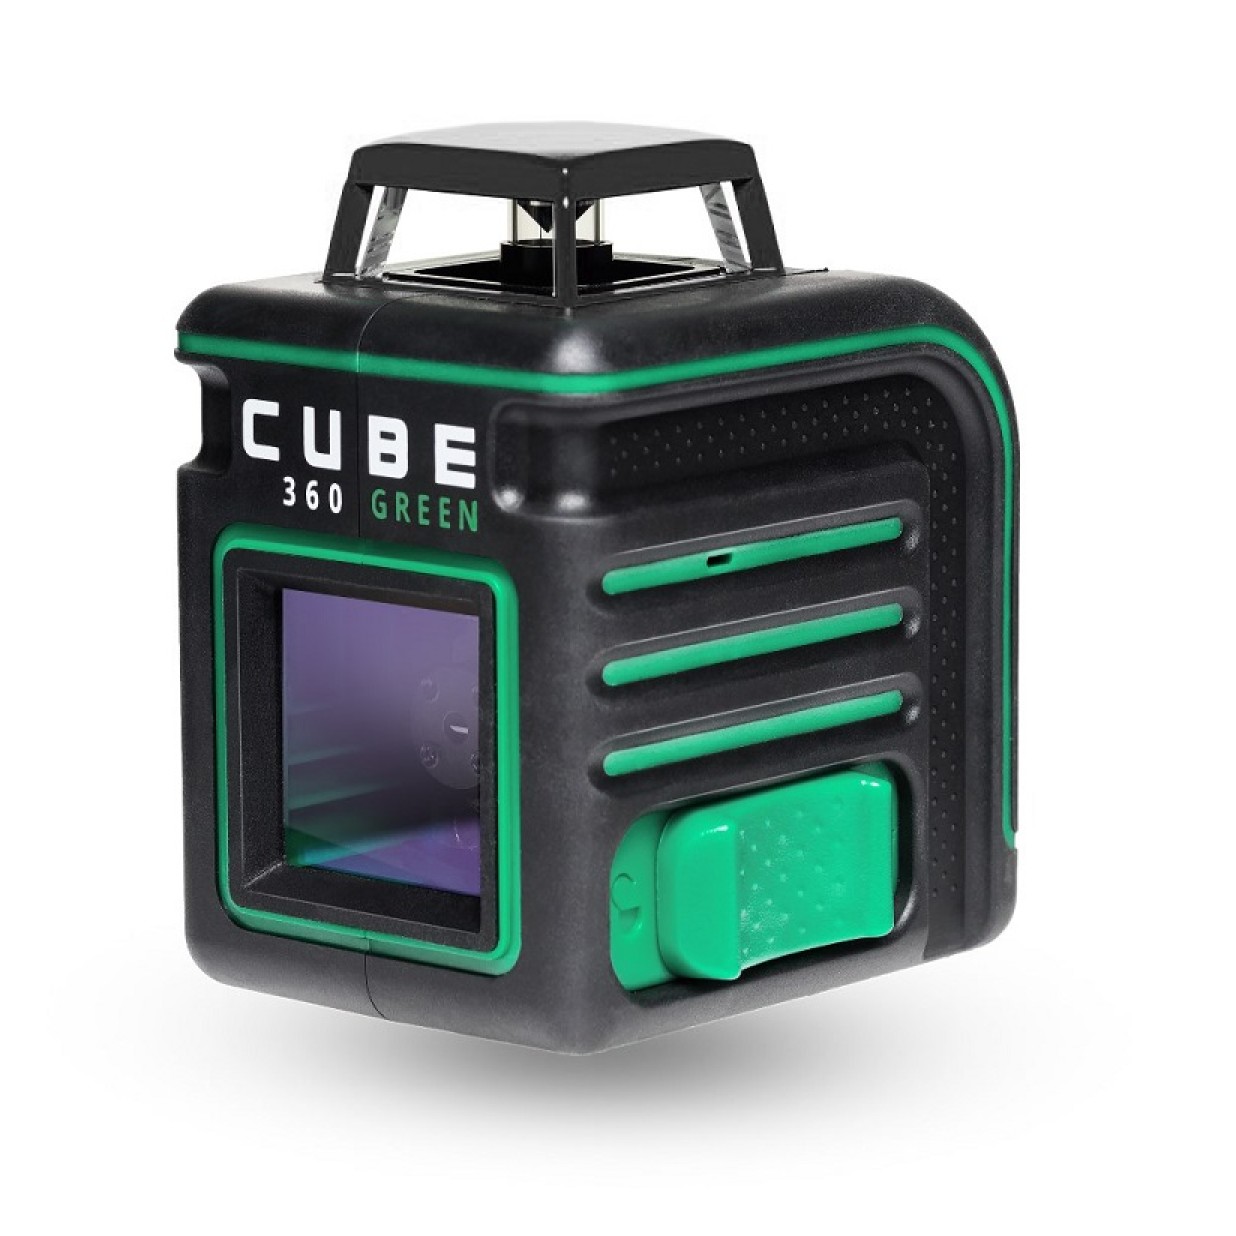 Лазерный уровень ada cube 360 green. Нивелир лазерный ada Cube 360. Лазерный уровень Cube 2-360. Ada Cube 360 Green professional Edition. Лазерный уровень ada Cube 360 Basic Edition.